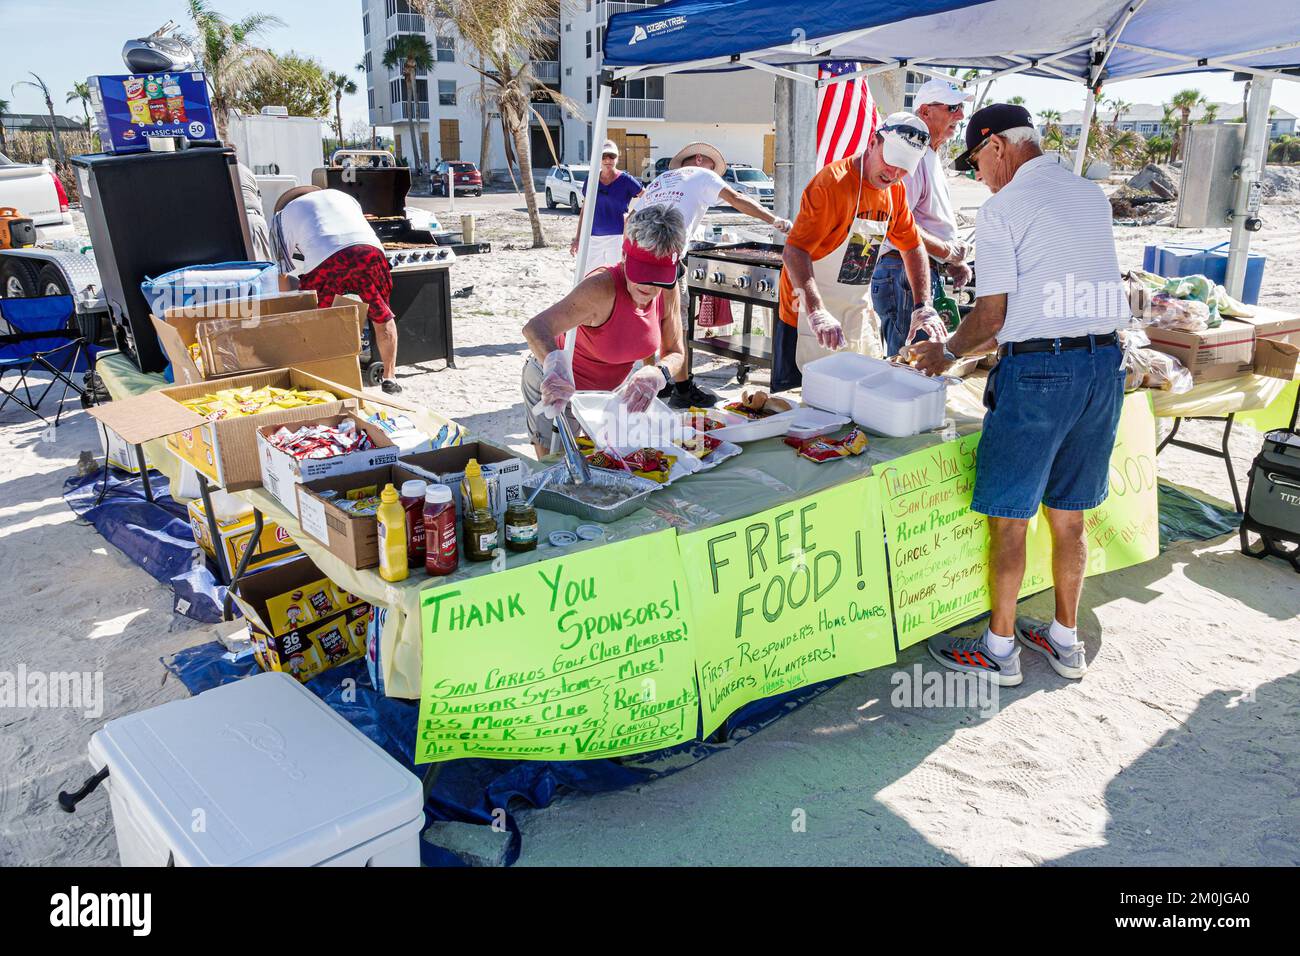 Bonita Beach Bonita Springs Florida, Little Hickory Island Hickory Boulevard, Hurricane Ian récupération nourriture gratuite offert aux propriétaires de premier secours, volun Banque D'Images